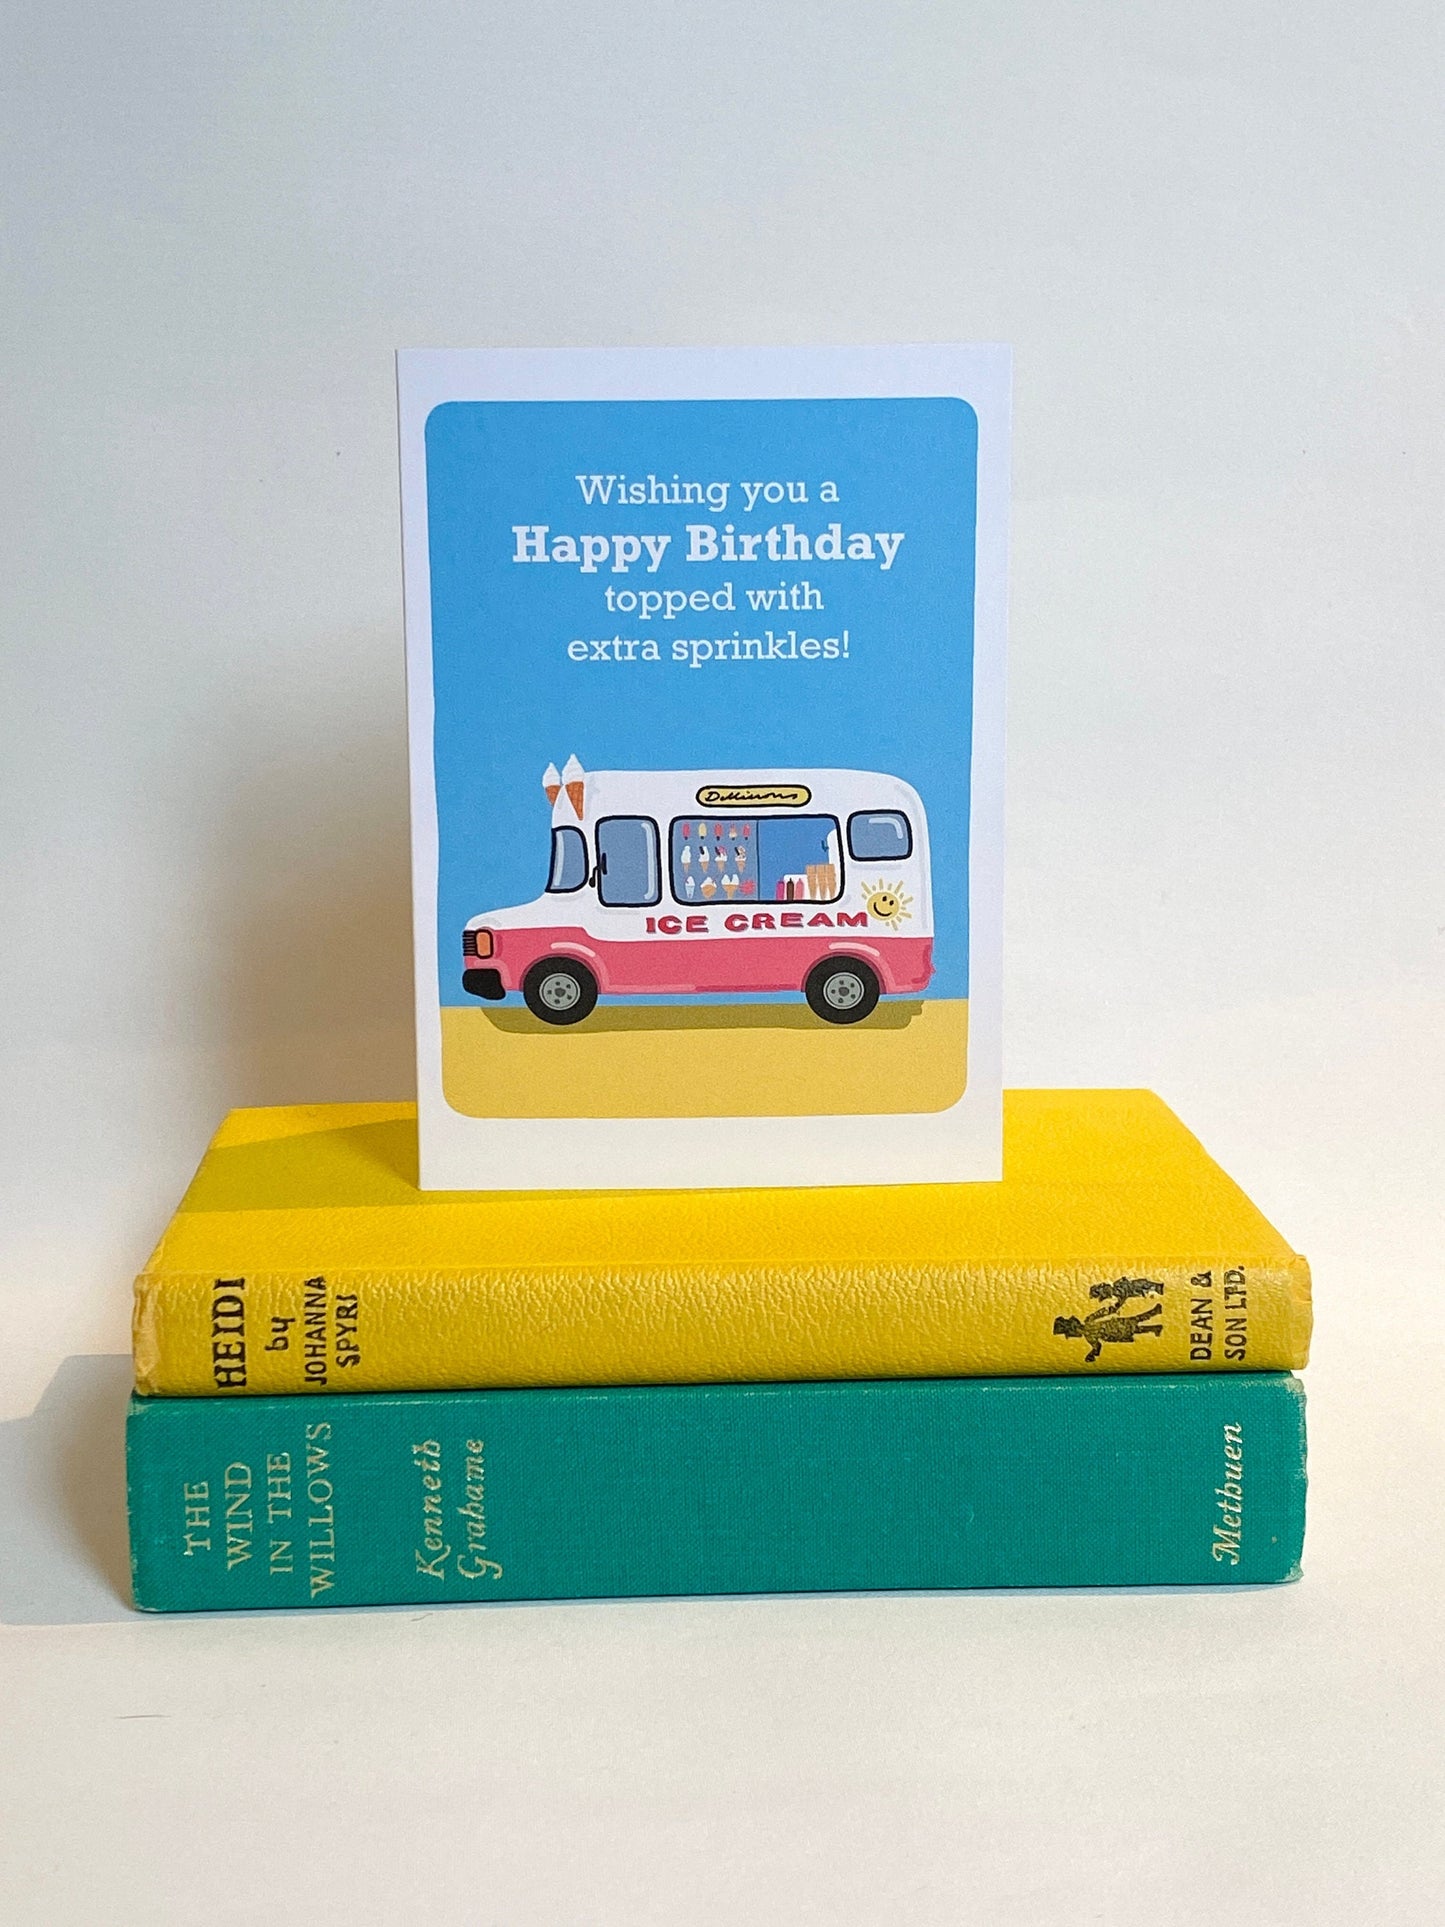 Retro Ice Cream van Birthday card, Colourful retro Ice cream van, with extra sprinkles!